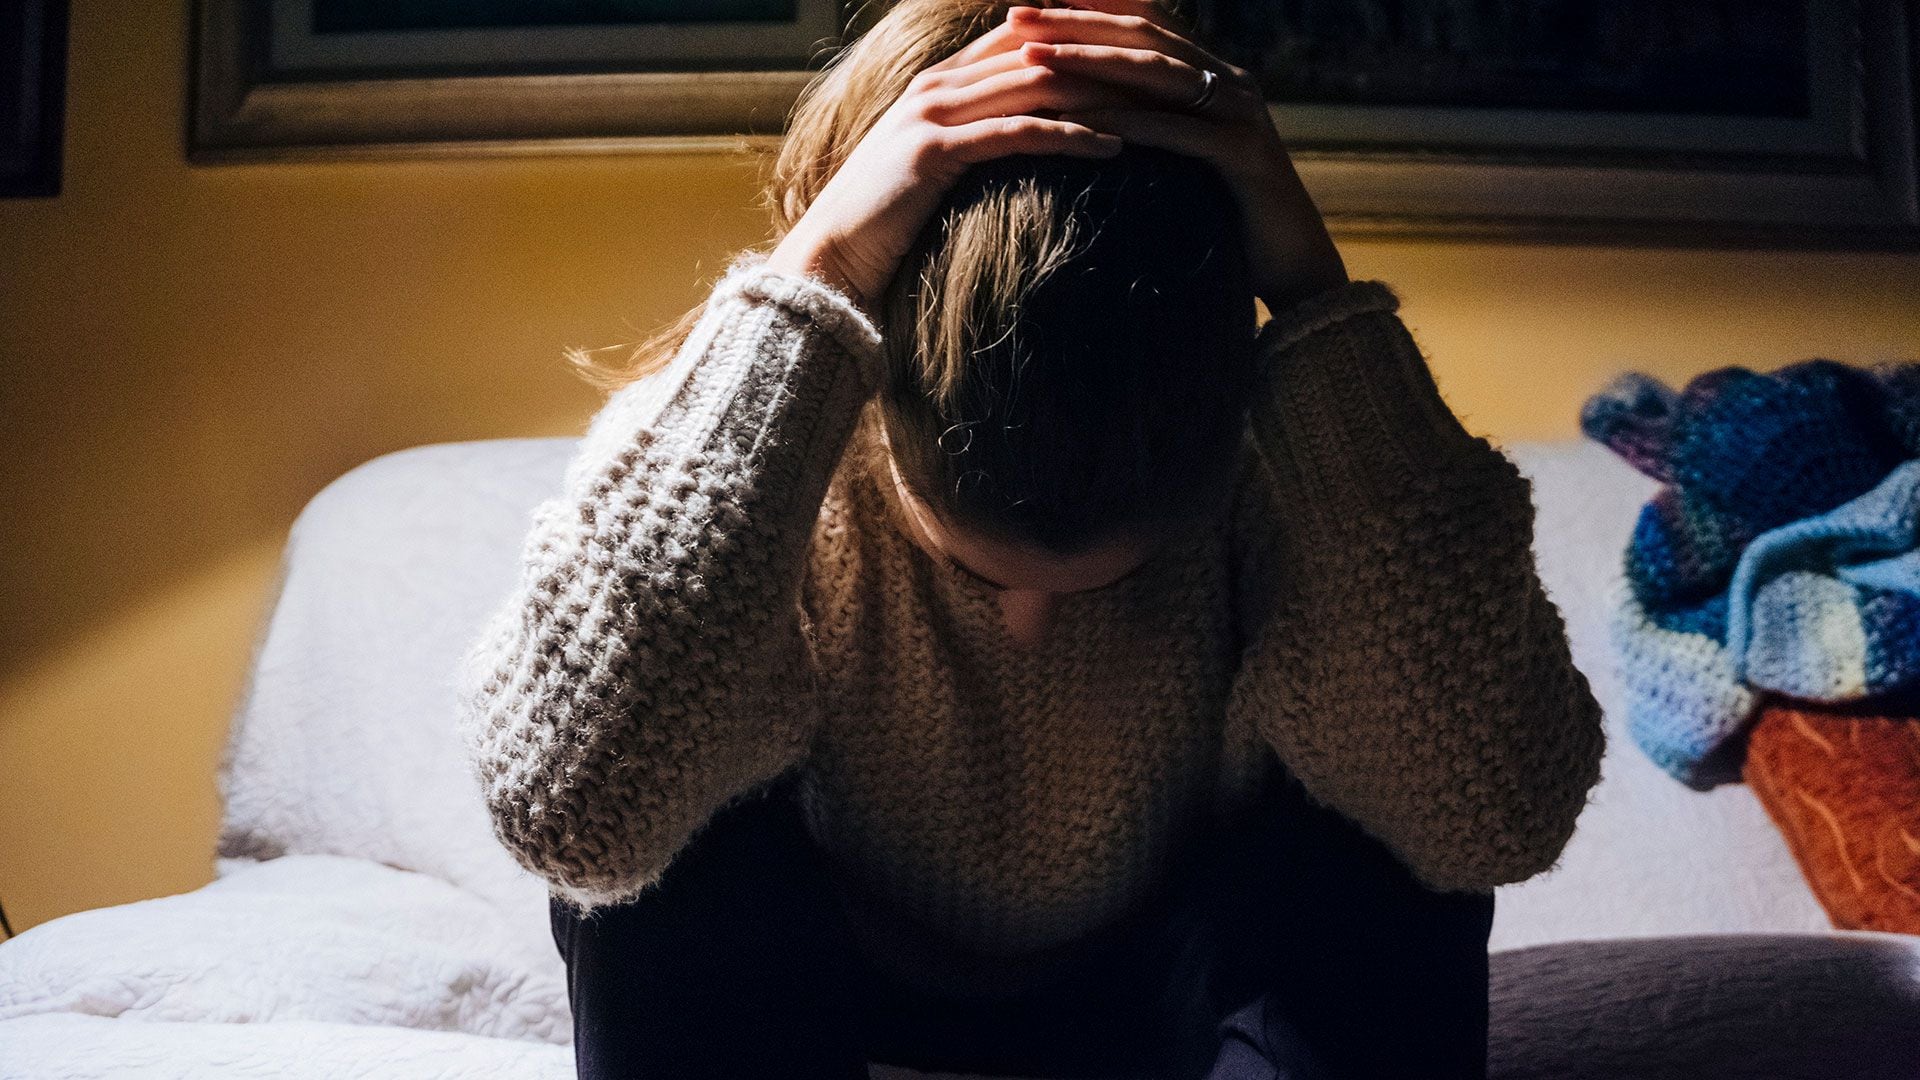 Las consecuencias de la violencia sexual incluyen problemas emocionales, psicológicos y riesgos de enfermedades (Getty Images)